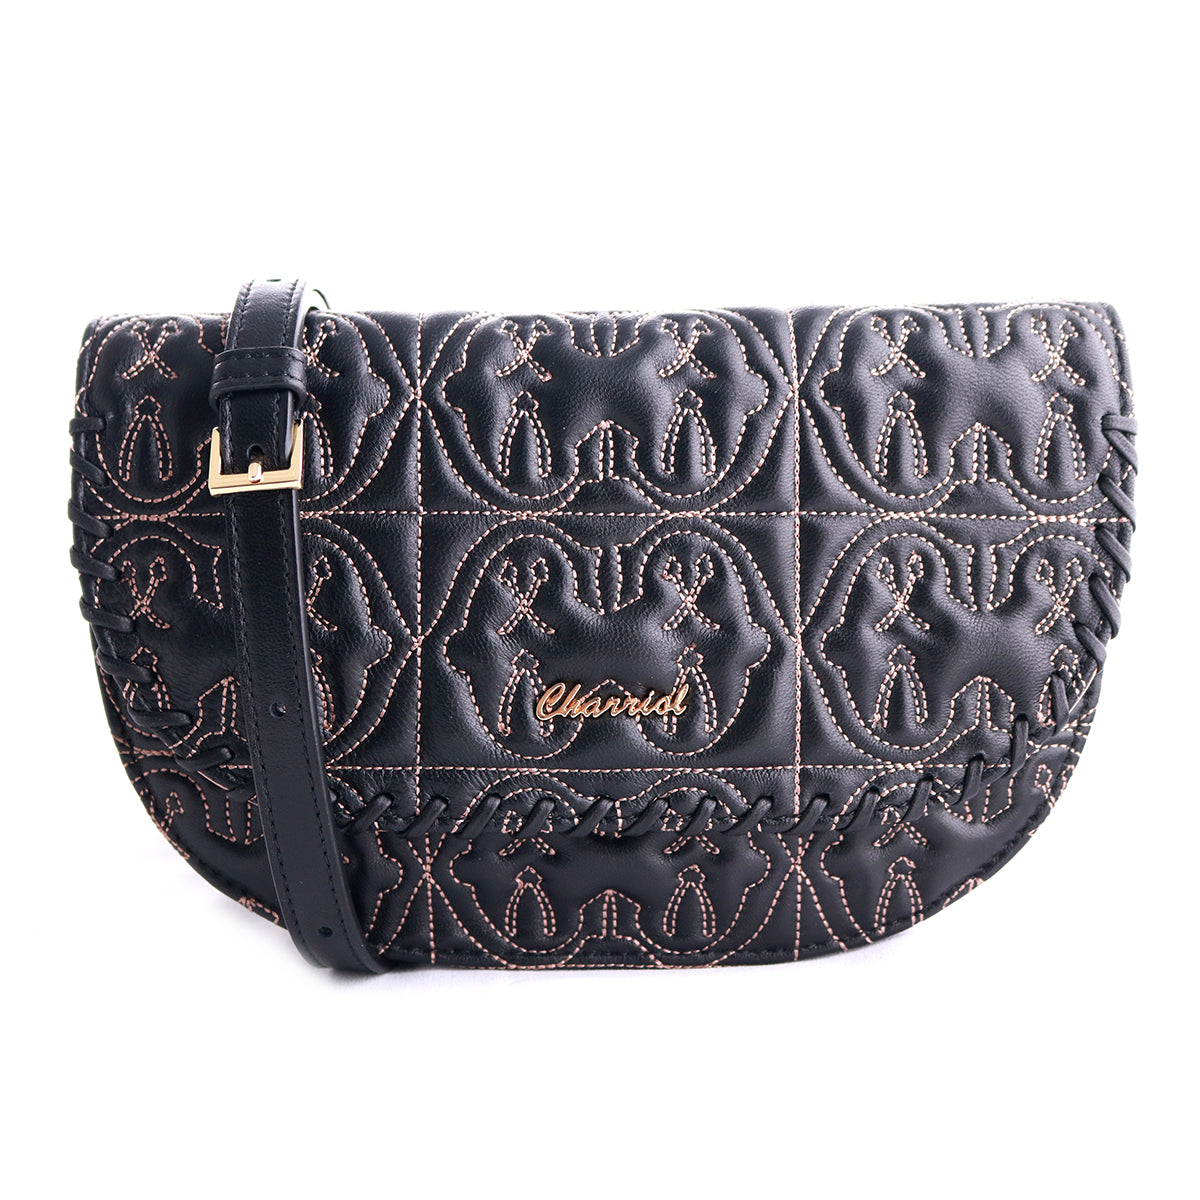 Quilted Celtic Handbag, Black/brown